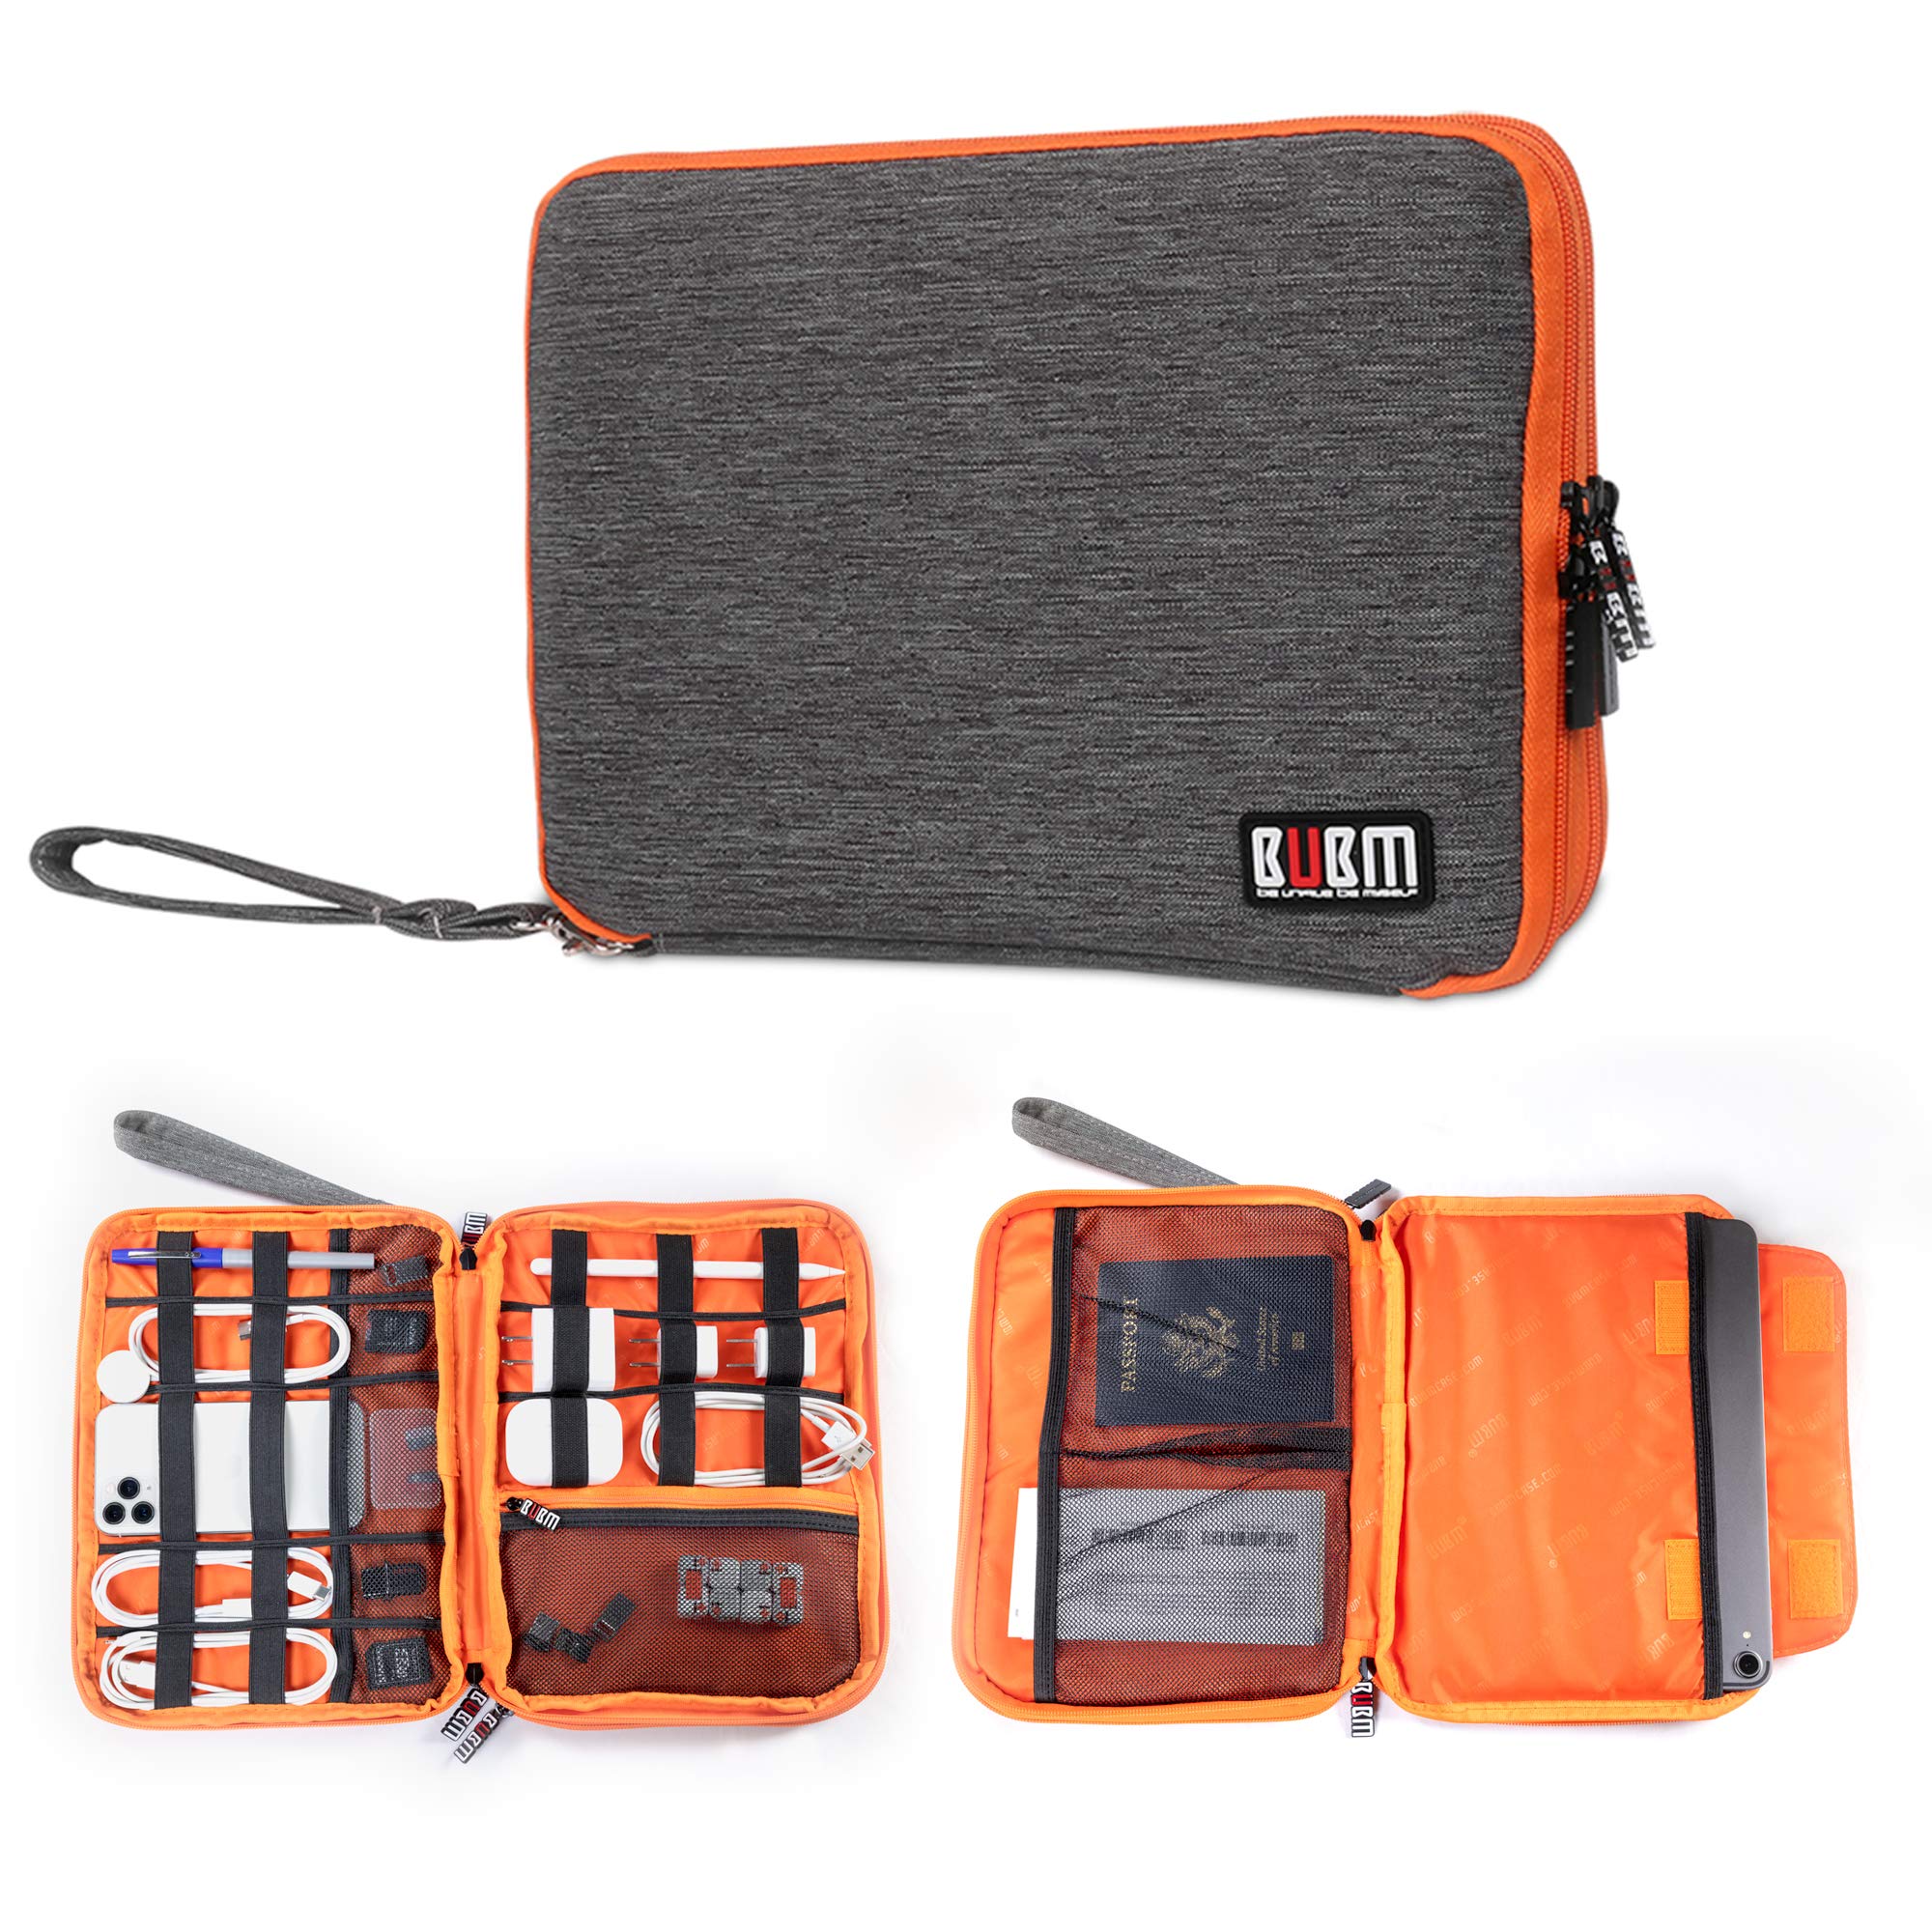 3-lagiger Reise-Organizer und elektronische Organizer für Tablet, Kabel, bündige Laufwerke und Ladegeräte 11.02 inch X 8.26 inch X 1.97 inch Grey and Bright Orange